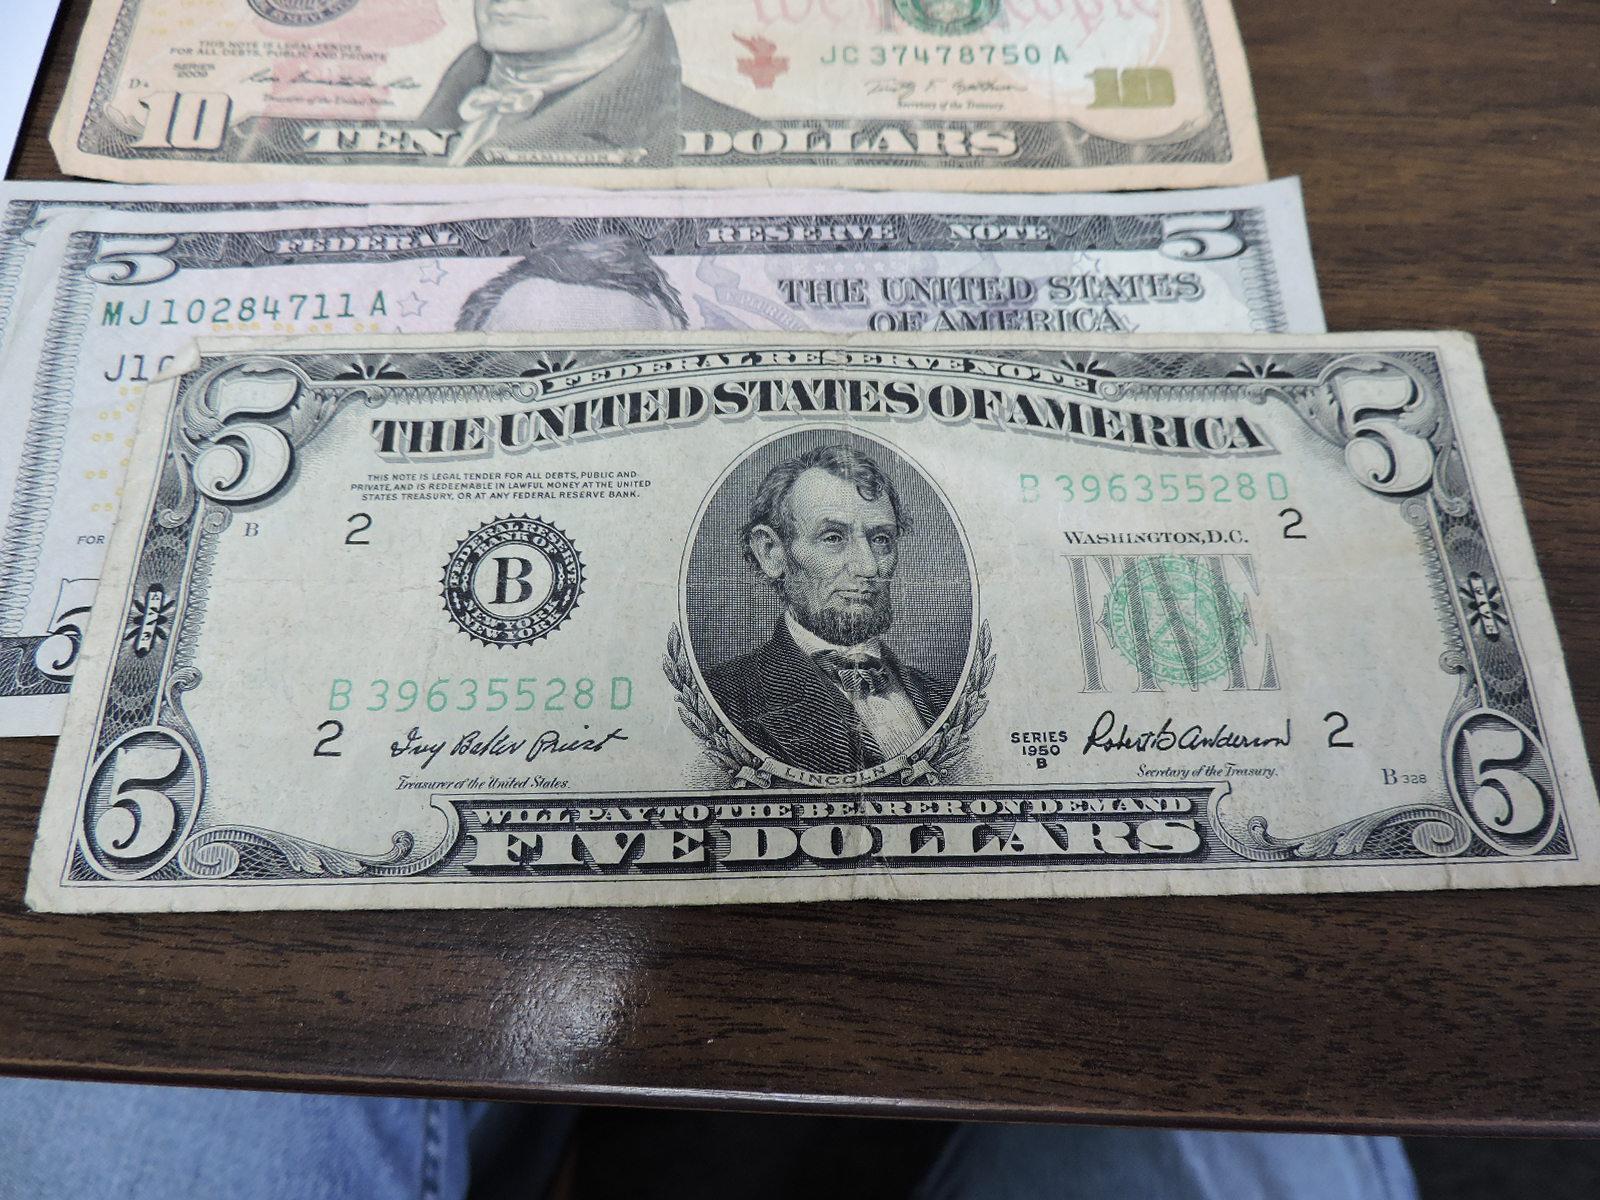 3 Five-Dollar Bills, 1 Ten and 1 Twenty